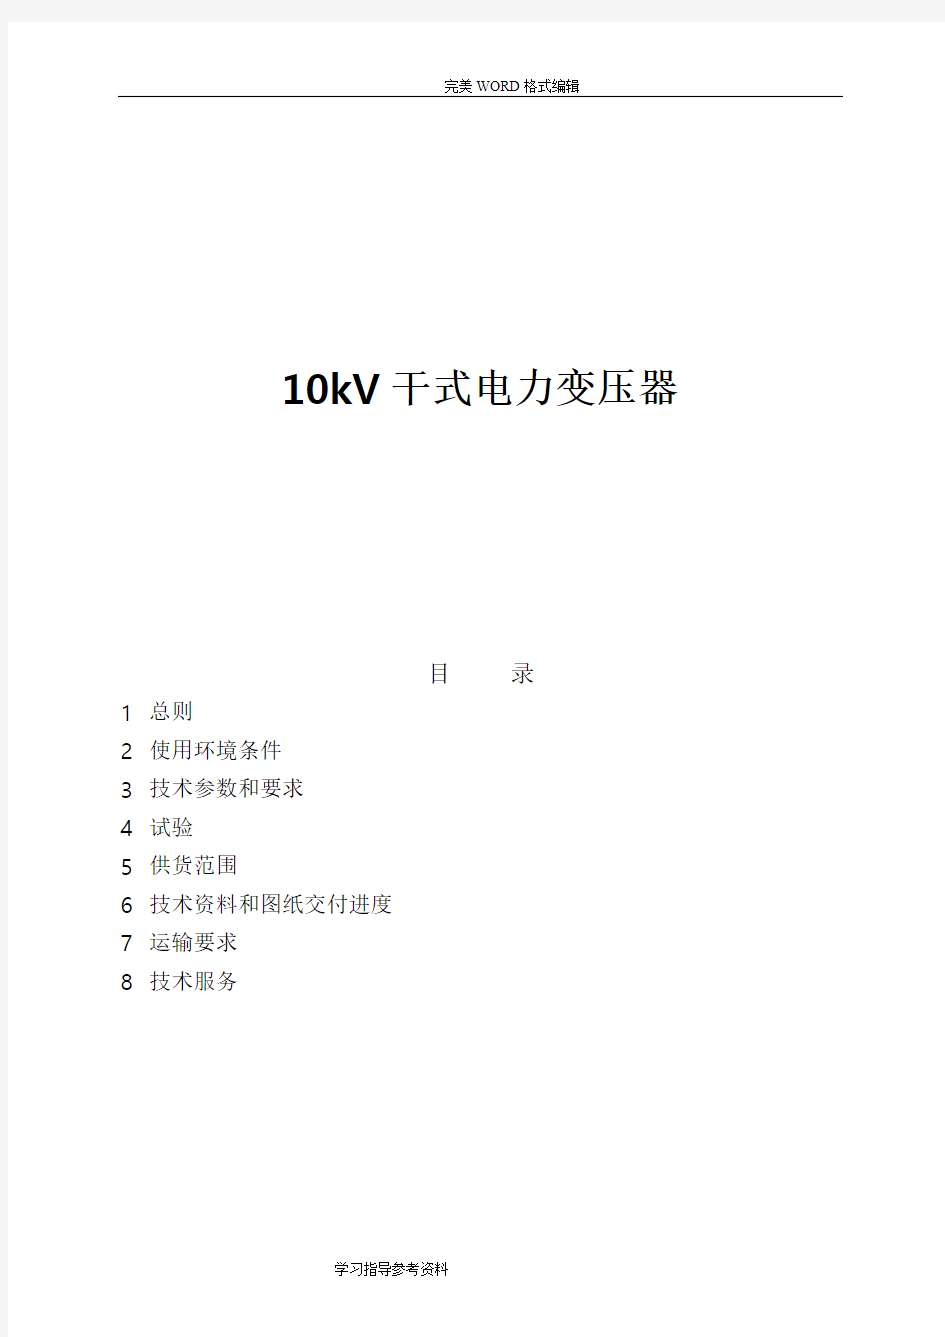 10kV干式变压器技术设计规范方案书